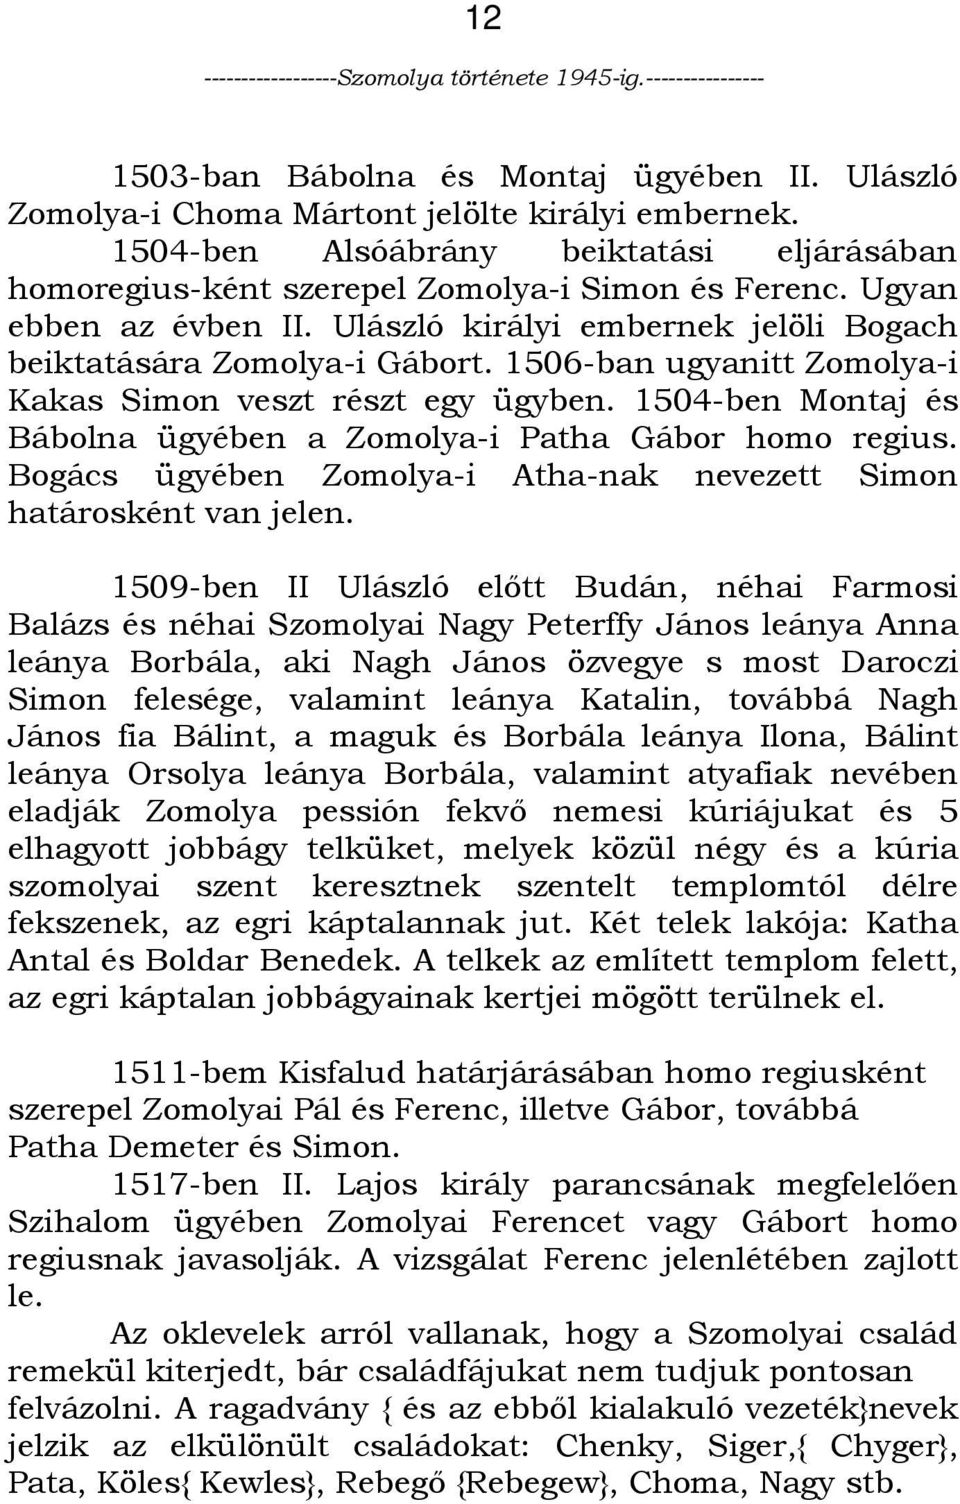 1504-ben Montaj és Bábolna ügyében a Zomolya-i Patha Gábor homo regius. Bogács ügyében Zomolya-i Atha-nak nevezett Simon határosként van jelen.